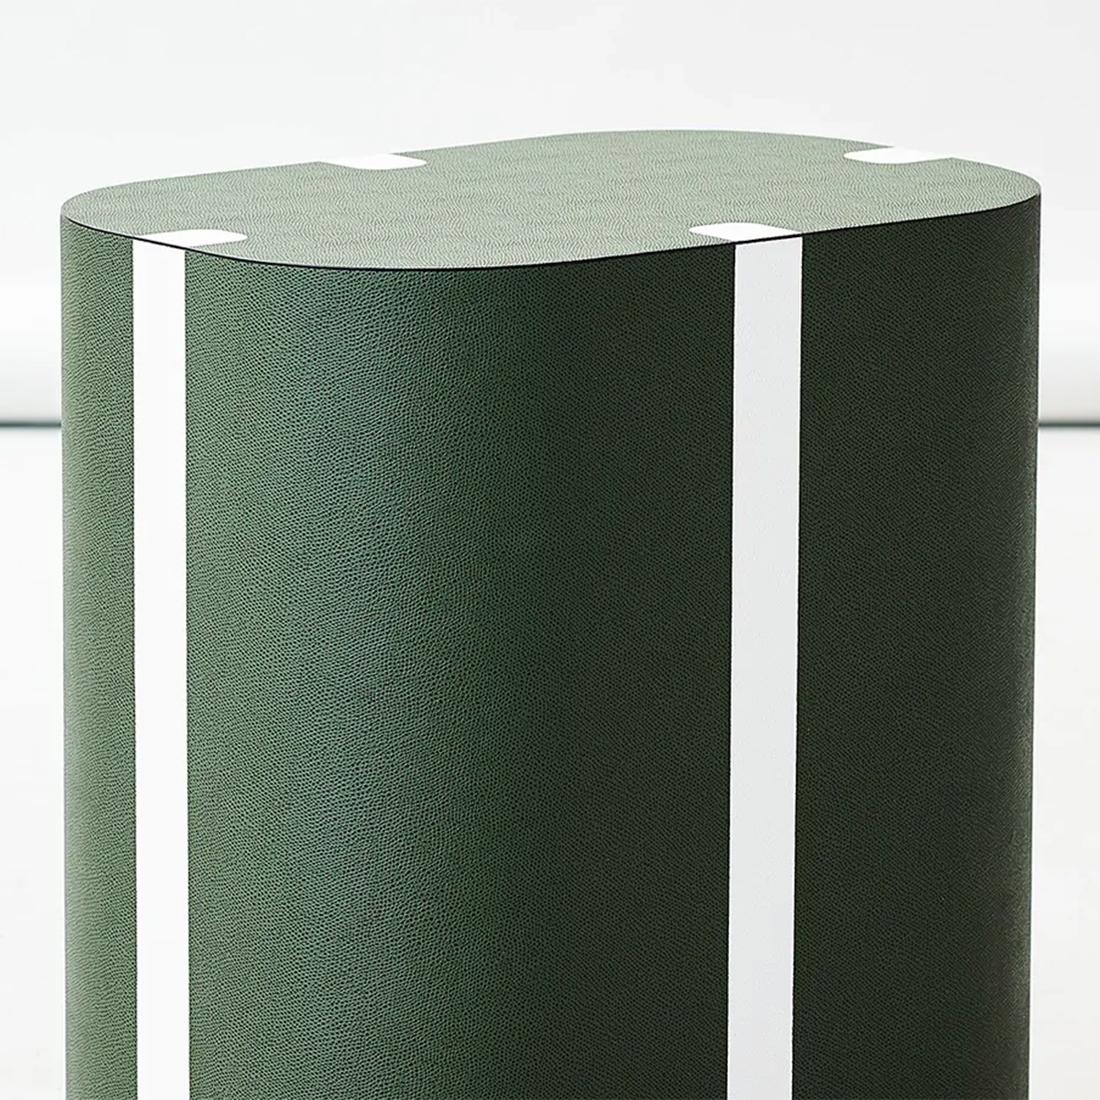 Tabouret Sipane Green avec structure en bois massif,
recouvert de cuir de veau vert fabriqué à la main 
couleur. Avec des garnitures en cuir de veau faites à la main en 
couleur blanche. 